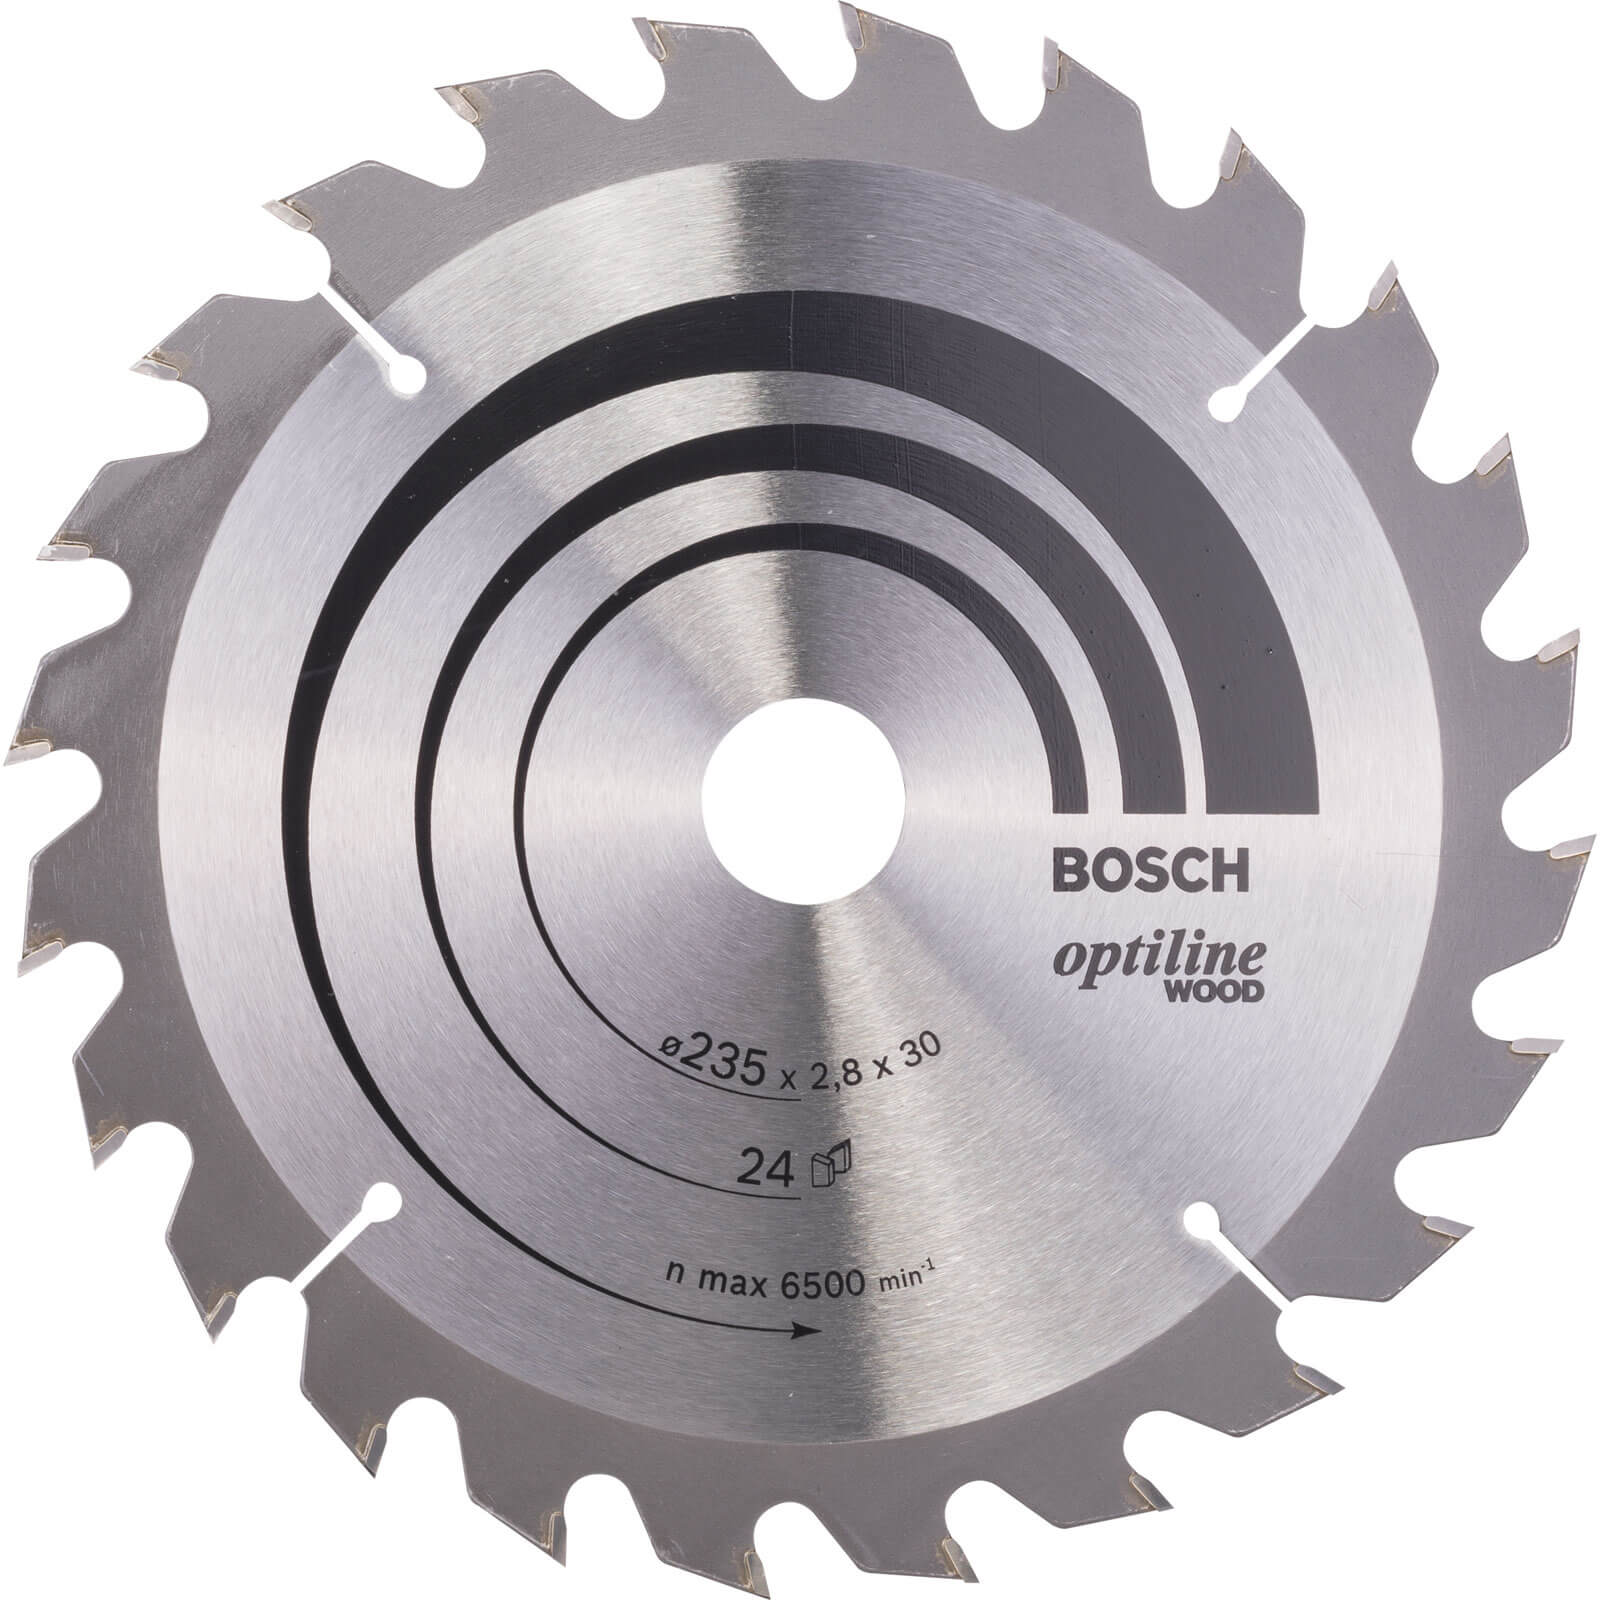 Bosch Optiline Wood Cutting Saw Blade 235mm 24T 30mm